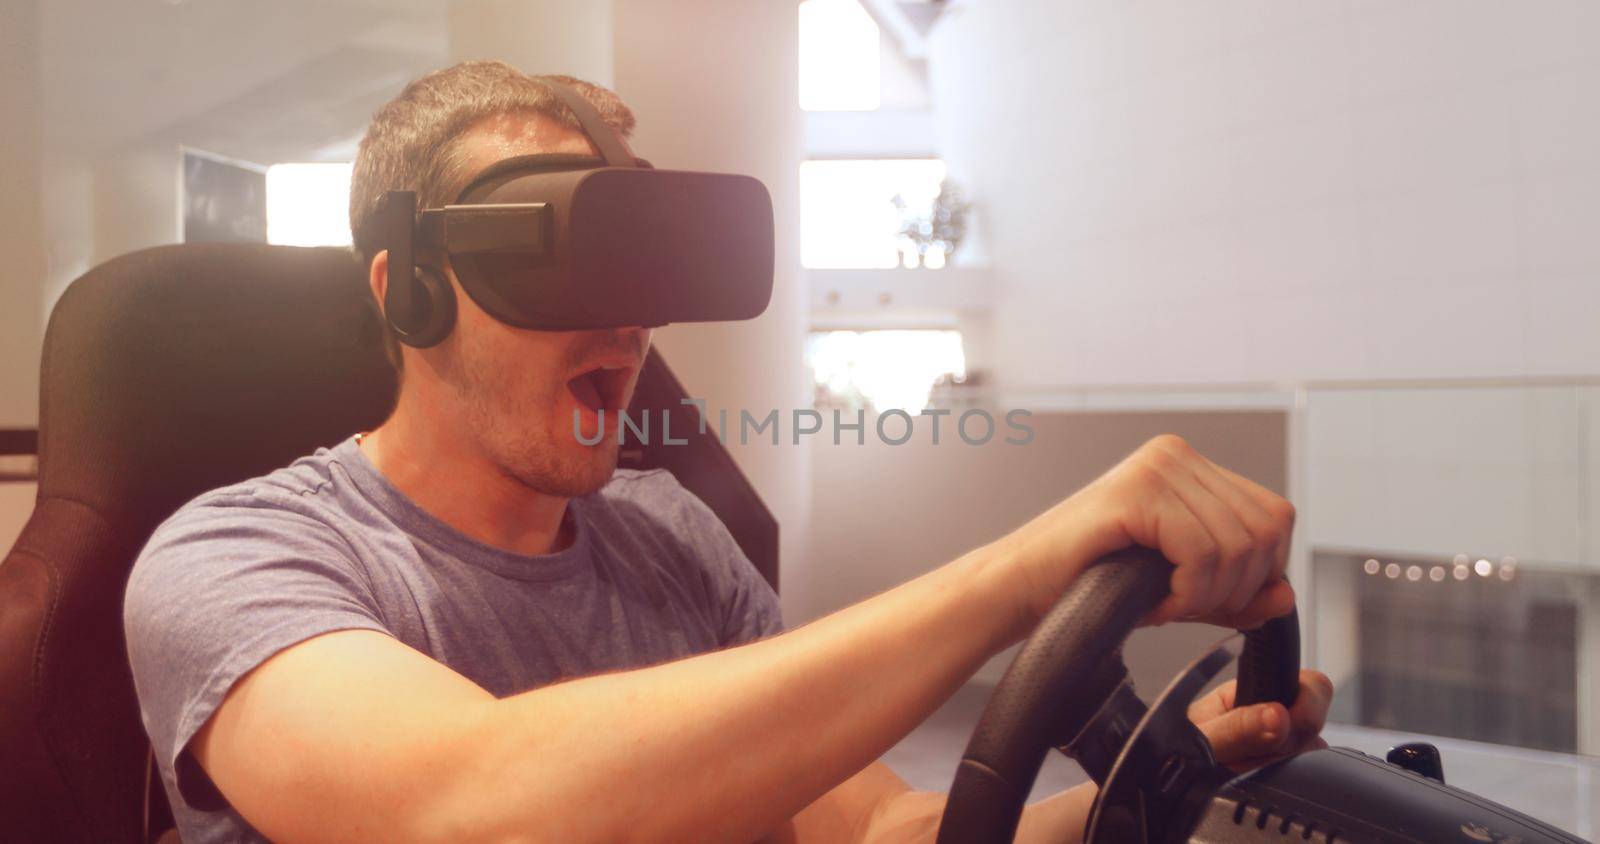 Computer simulation. Man in vr glasses racing steering wheel by Demkat